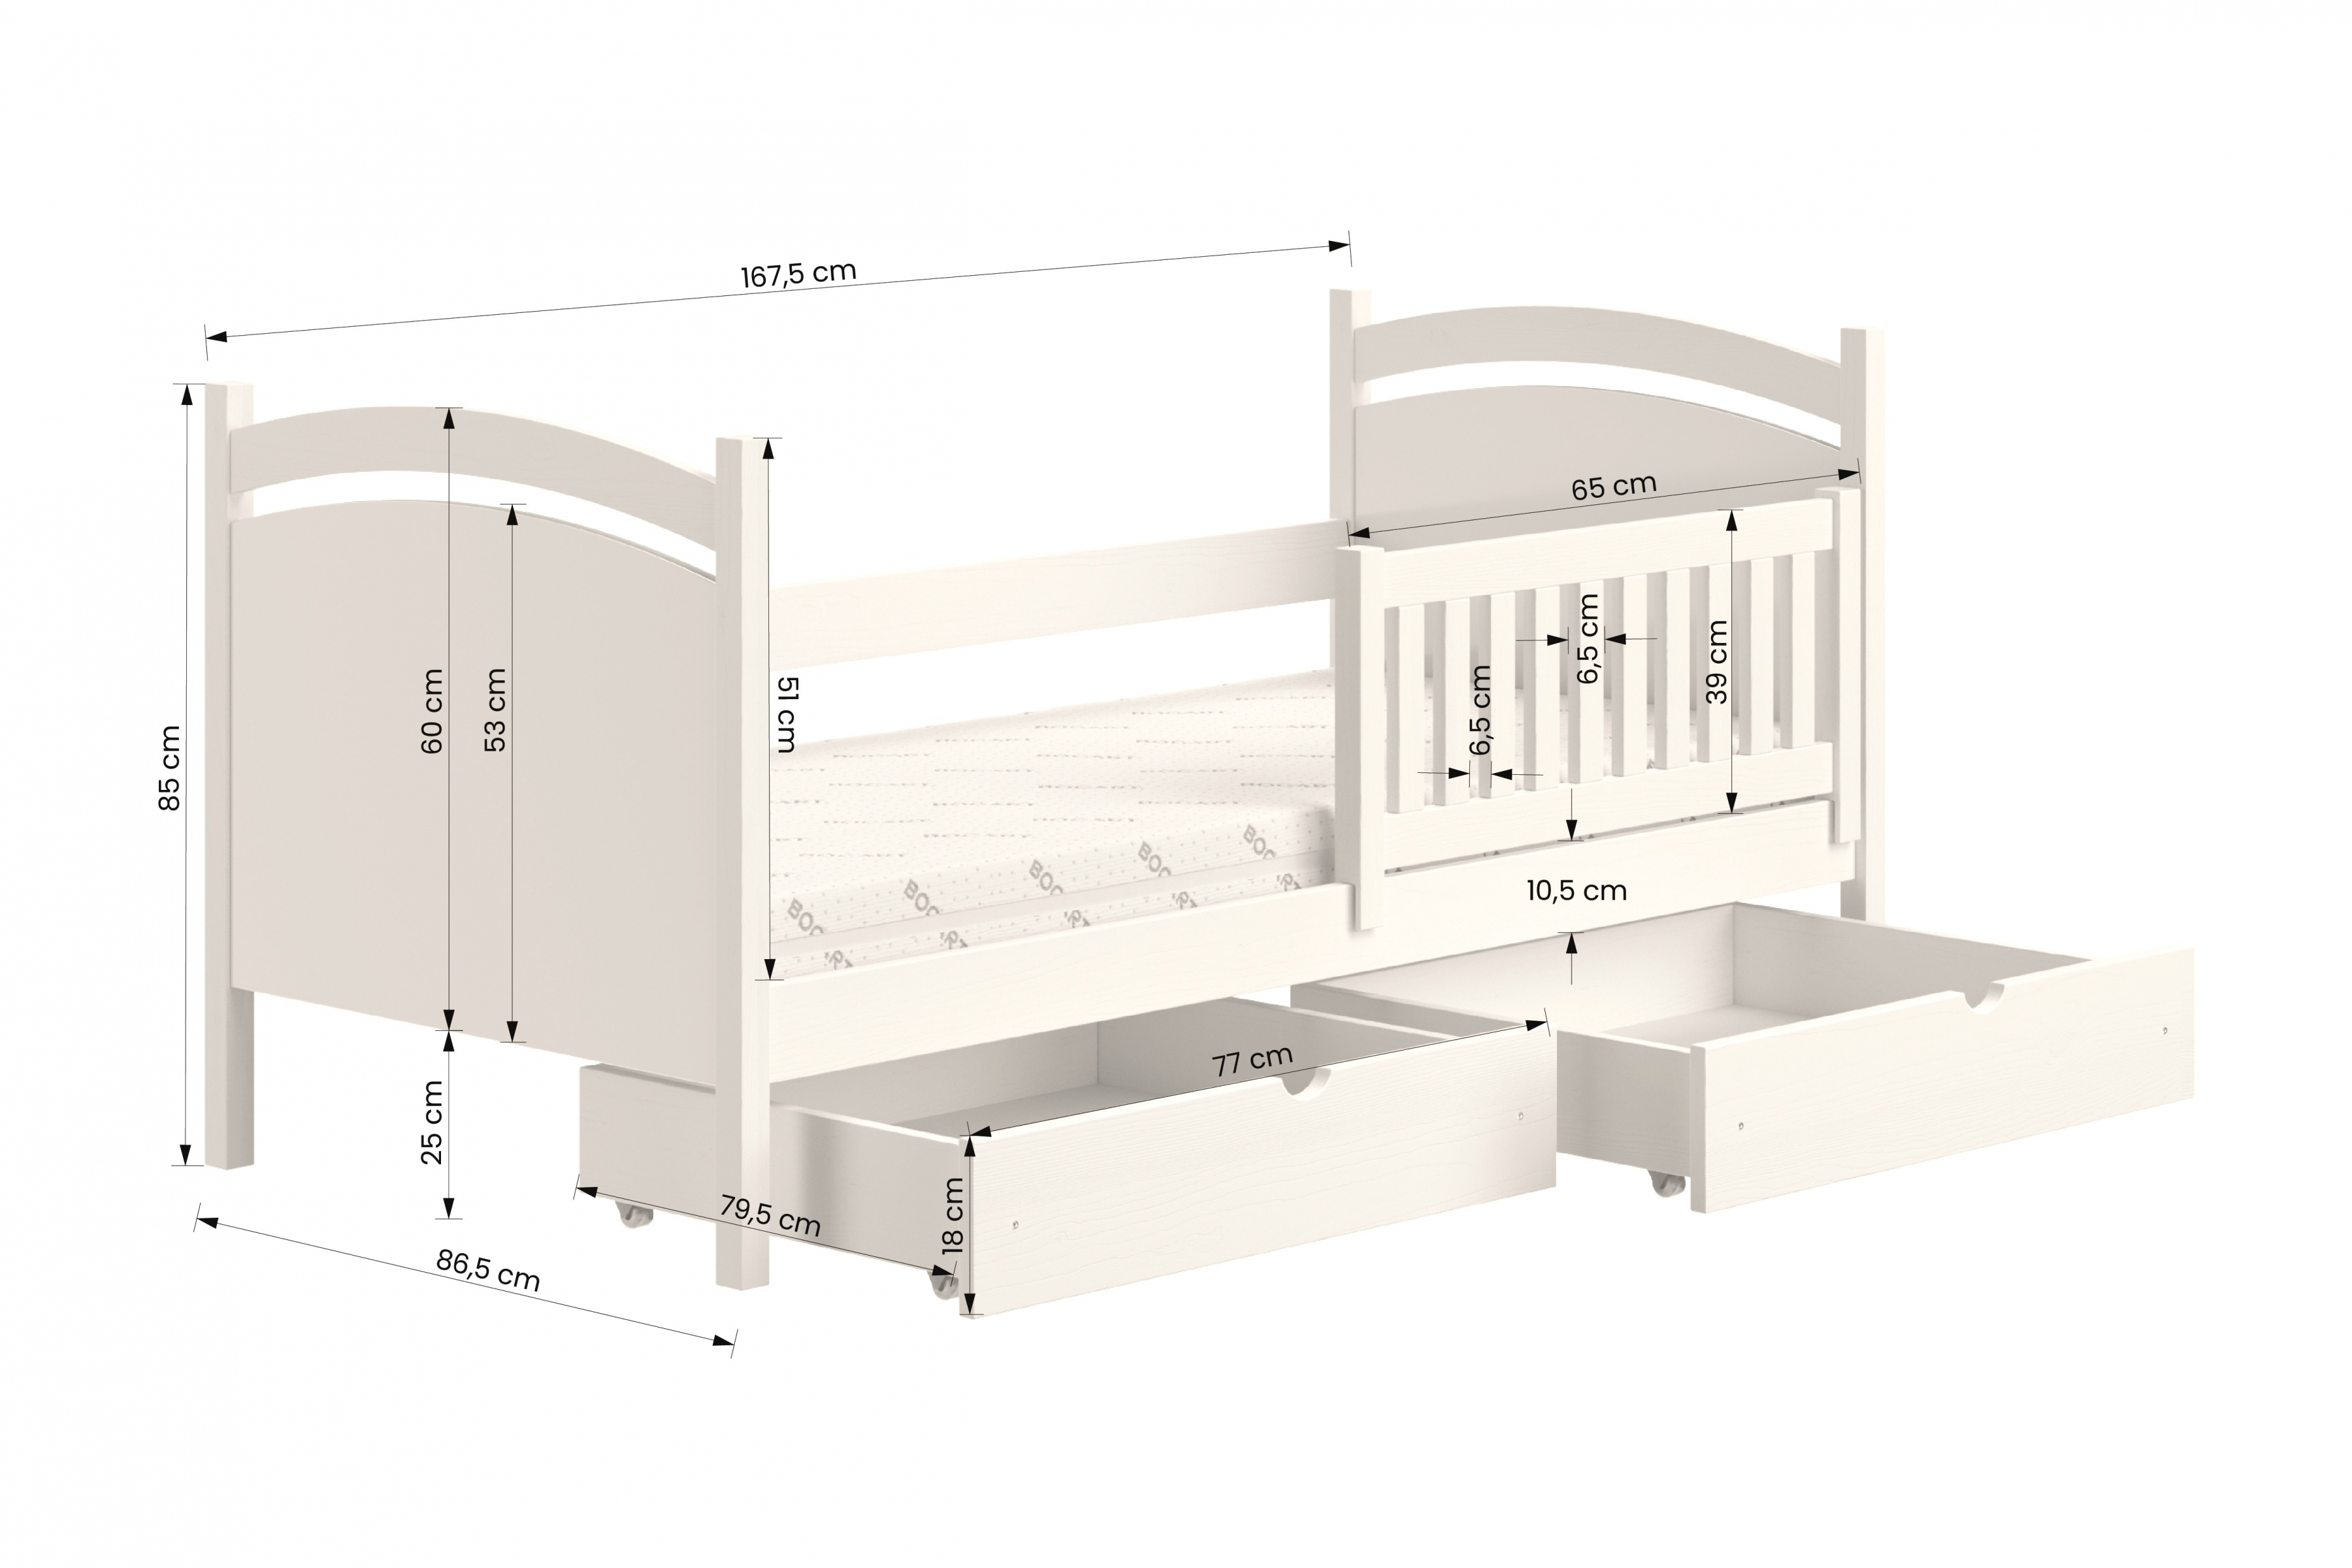 postel dětské s tabulí na suché mazání Amely - Barva šedý, rozměr 80x160 postel dzieciece z tablica suchoscieralna Amely - Rozměry